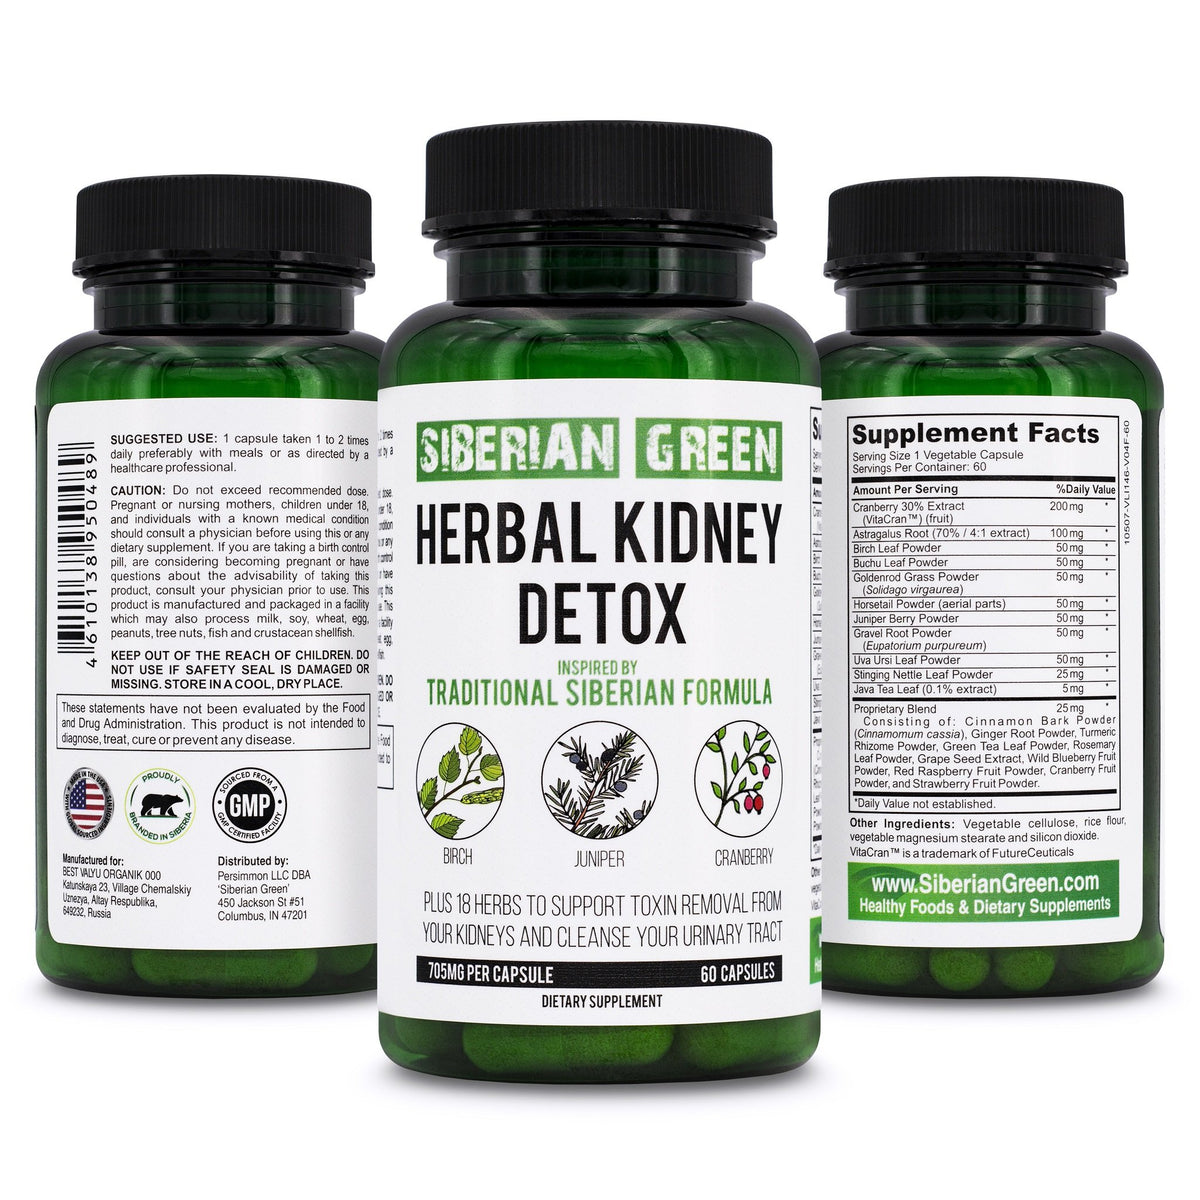 Siberian Green Herbal Kidney Detox 60 Capsules – Cranberry Birch Juniper Traditional Siberian Formula